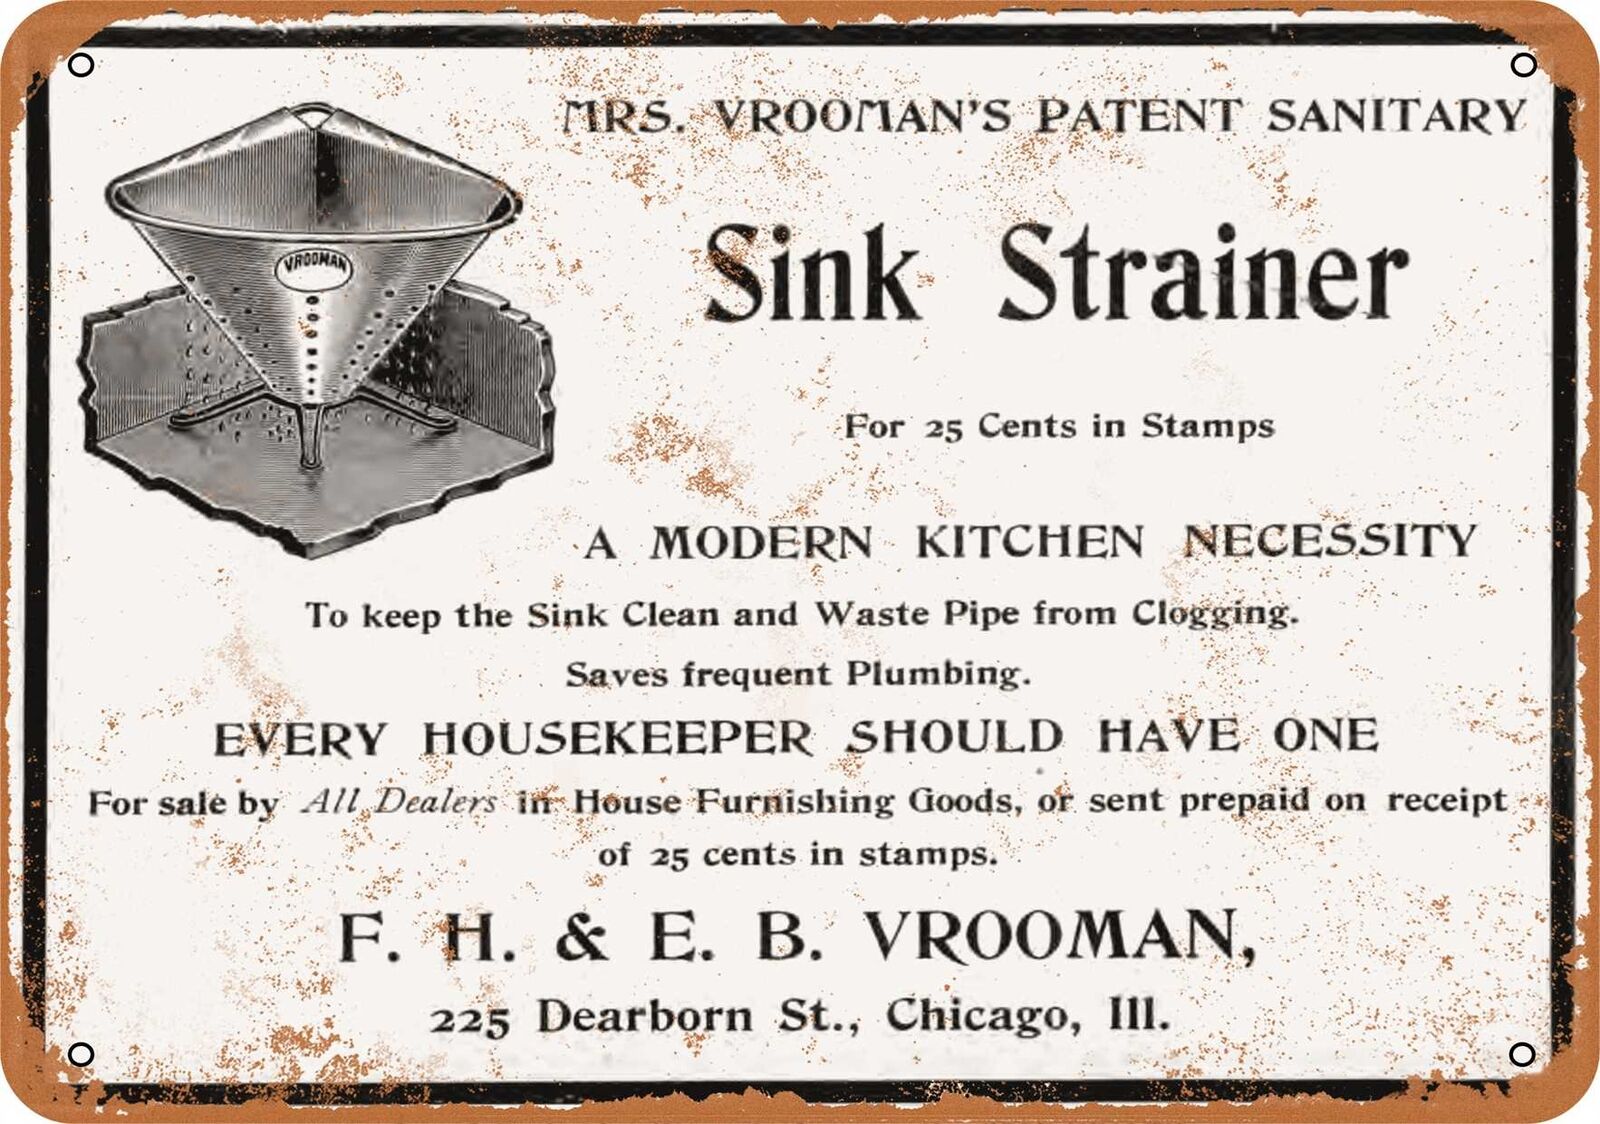 Metal Sign - 1903 Mrs. Vrooman\'s Sanitary Sink Strainer - Vintage Look Repro